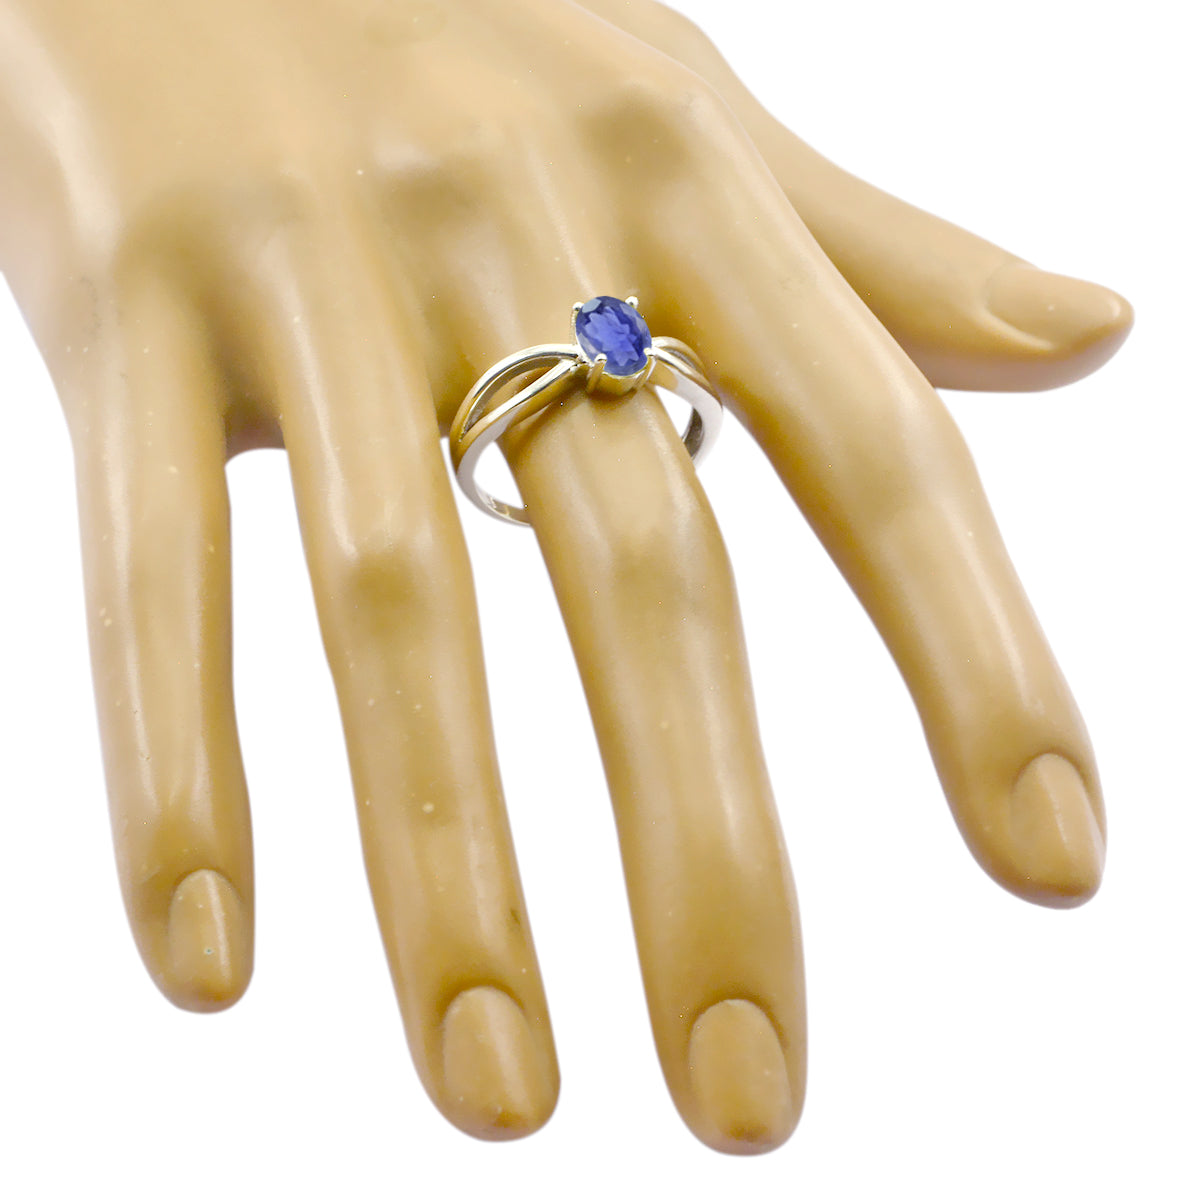 Riyo Fair Gemstone Iolite 925 Sterling Silver Ring Ladies Jewelry